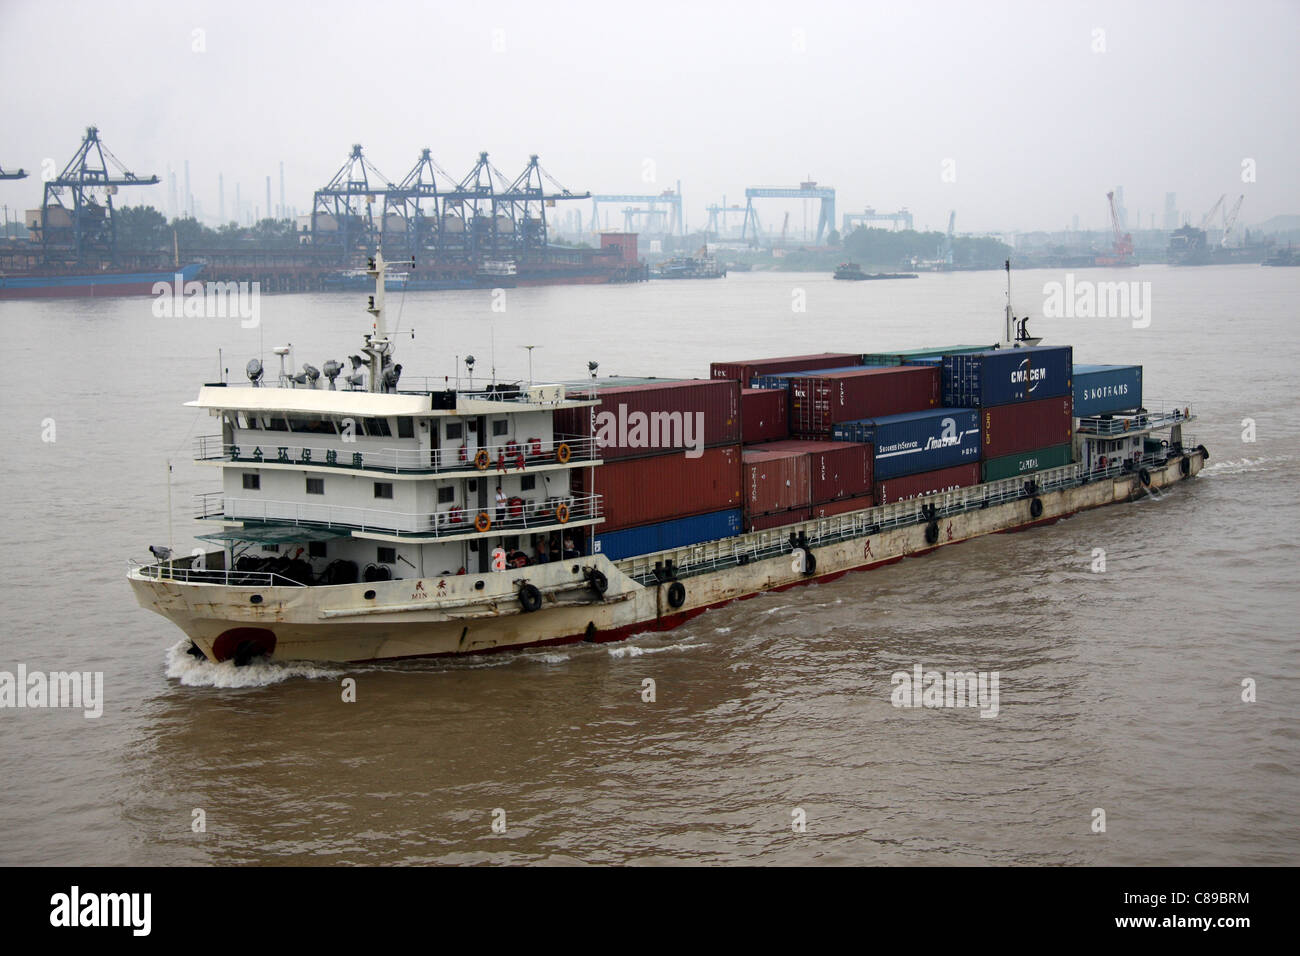 Der Fluss Frachter, Min, beladen mit Containern am Jangtse-Fluss zwischen Wuhan und Jiujiang, China Stockfoto